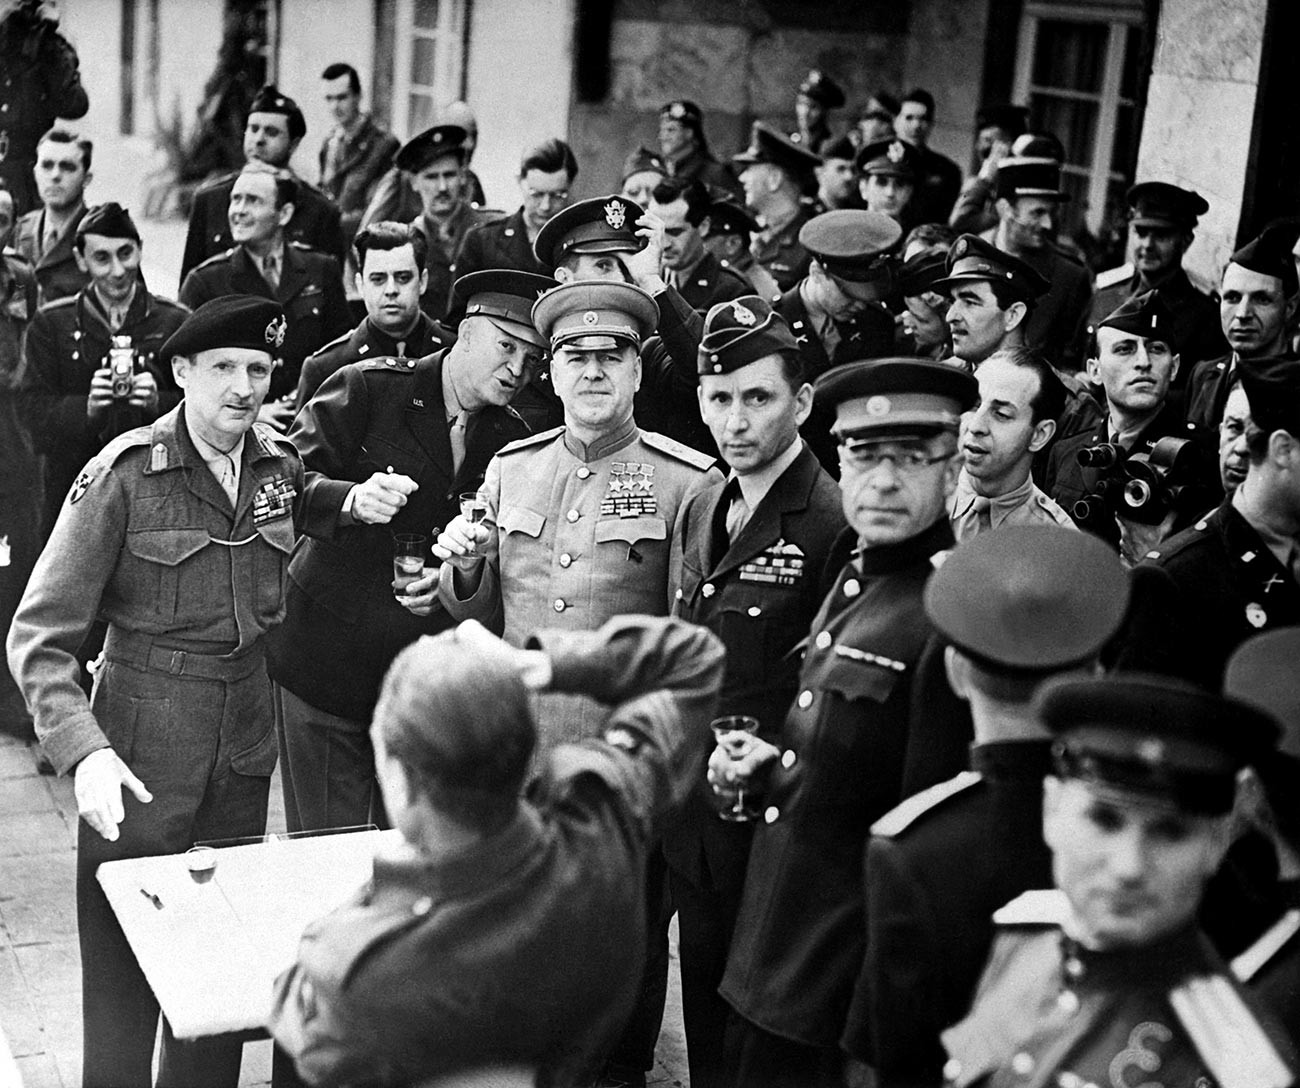 Британски фелдмаршал Бернард Монтгомери (лево са беретком) награђен Орденом Победе 5. јуна 1945. Десно од Монтгомерија су амерички генерал Двајт Ајзенхауер и совјетски маршал Георгиј Жуков, такође награђени Орденом Победе. Десно од Жукова је британски маршал авијације сер Артур Тедер.